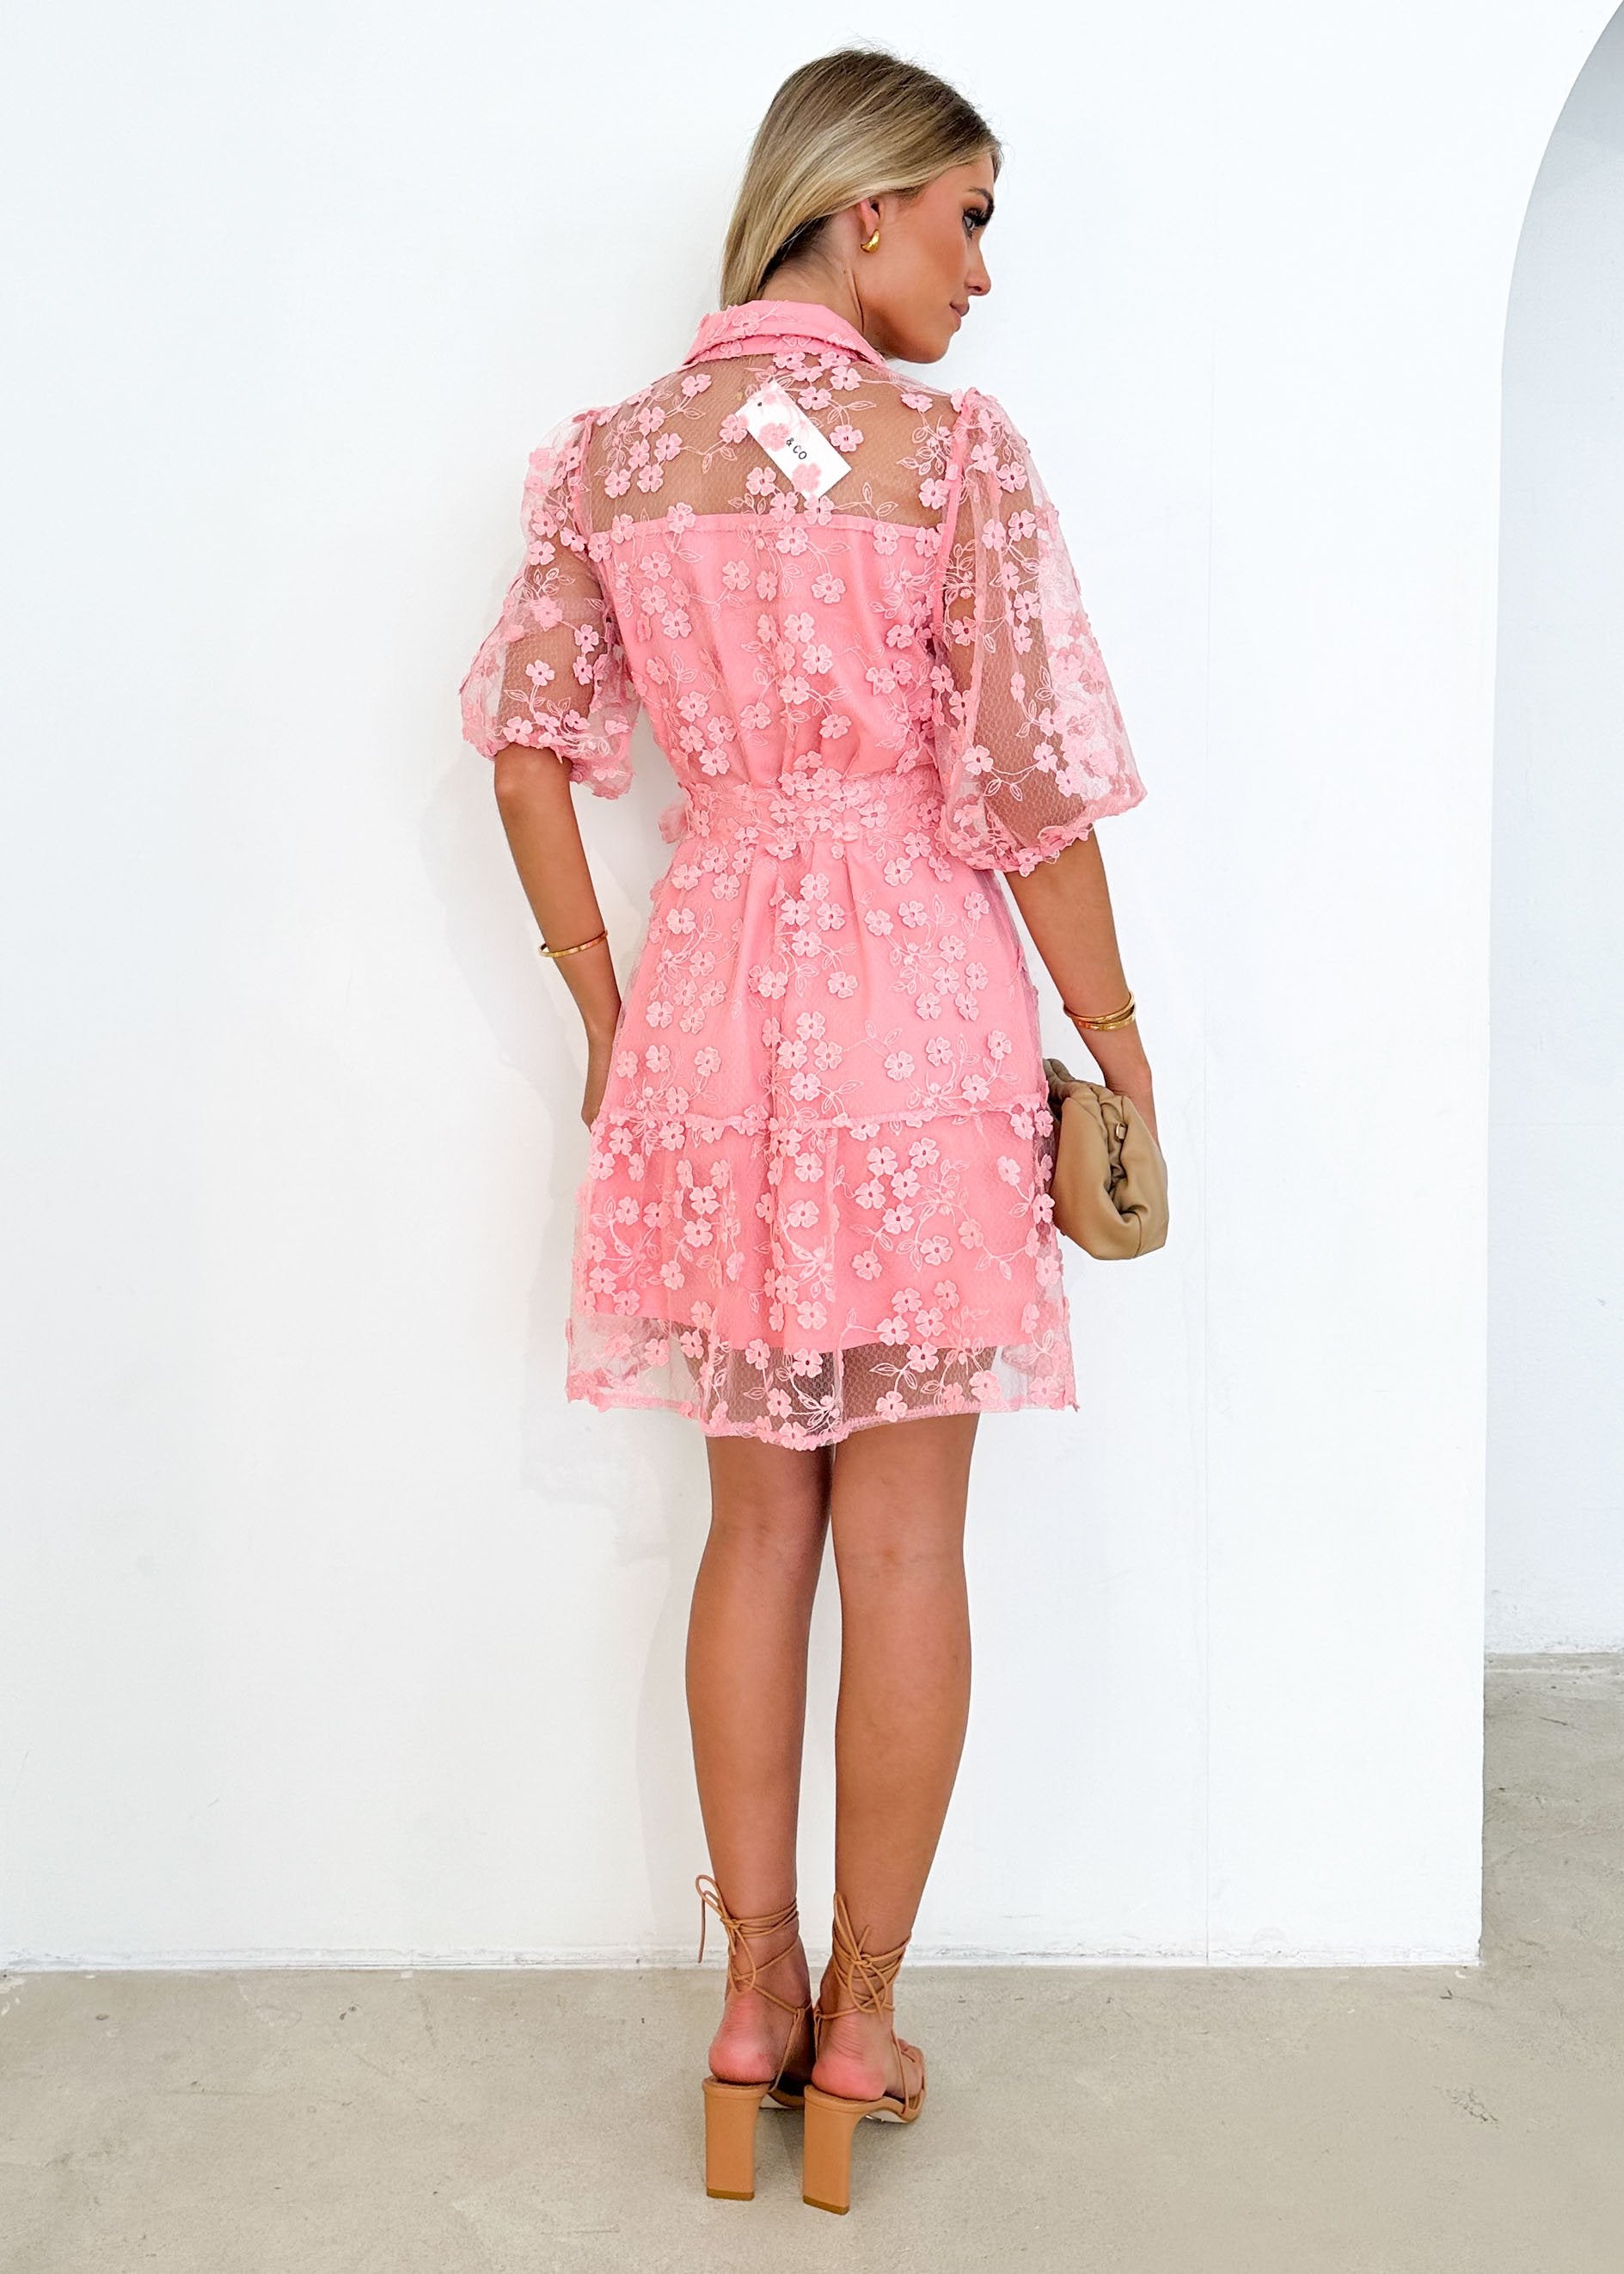 Riteski Embroidered Dress - Pink